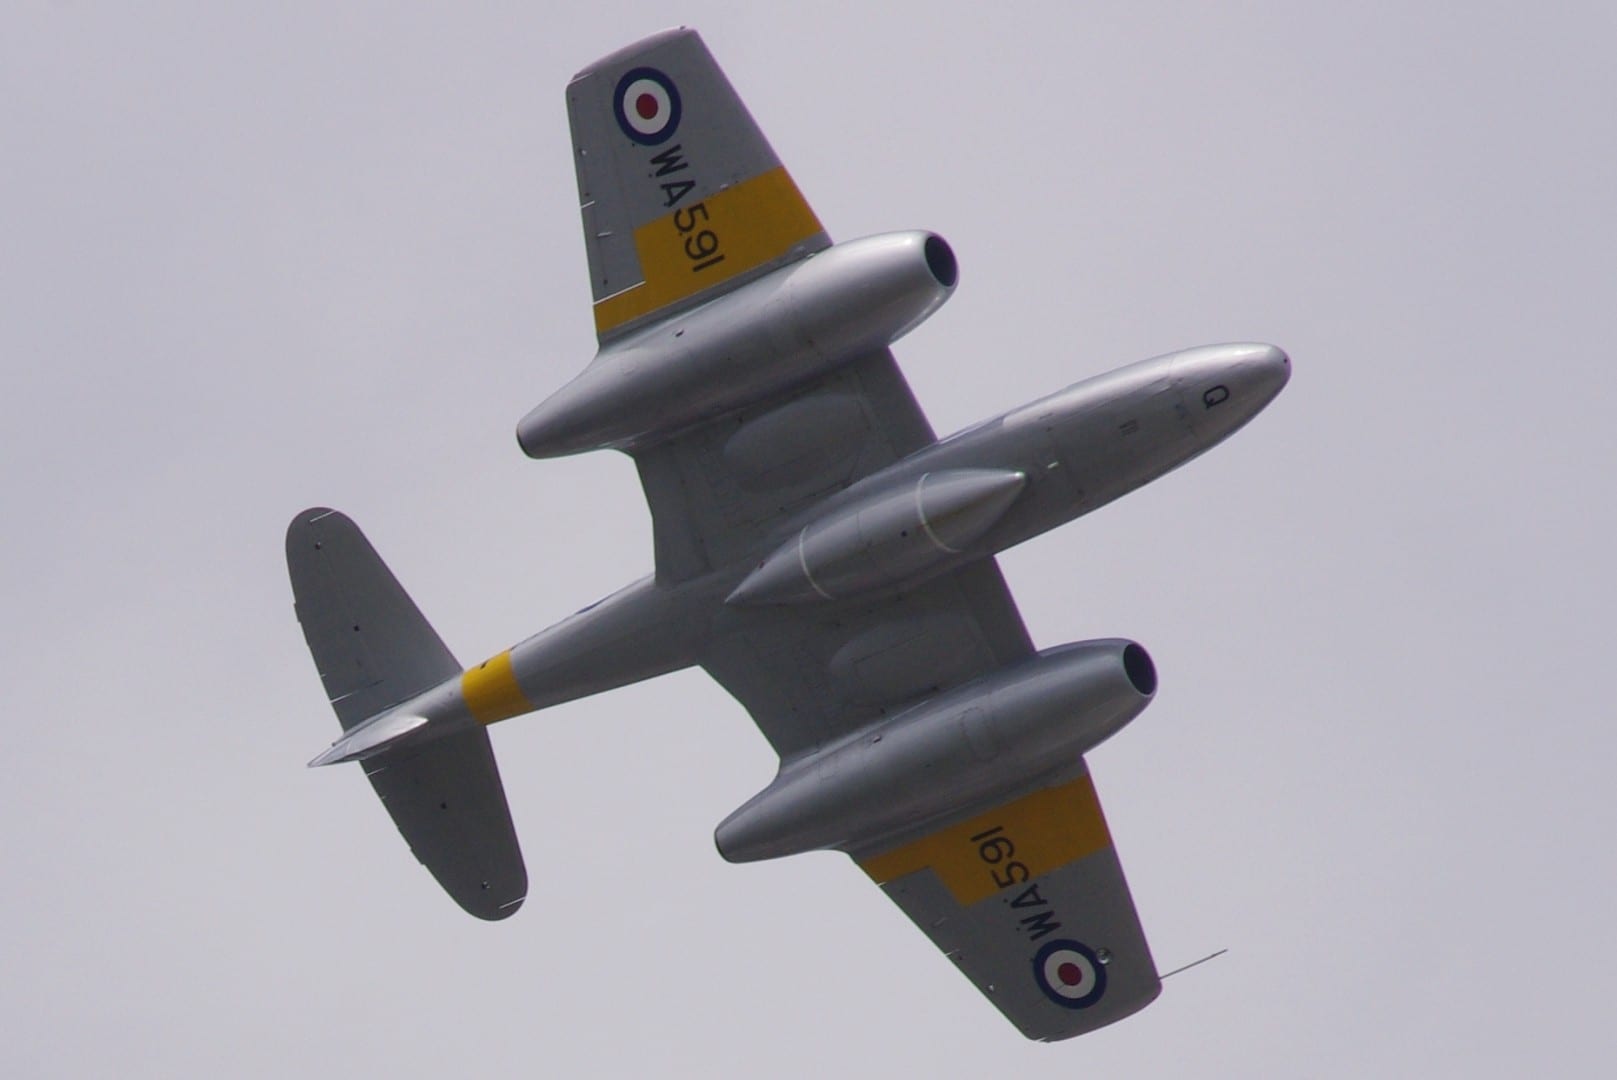 El Gloster Meteor, uno de los primeros aviones a reacción, fue desarrollado en Farnborough durante la Segunda Guerra Mundial. Aquí se lo ve volando en el 2014 I Farnborough Reino Unido